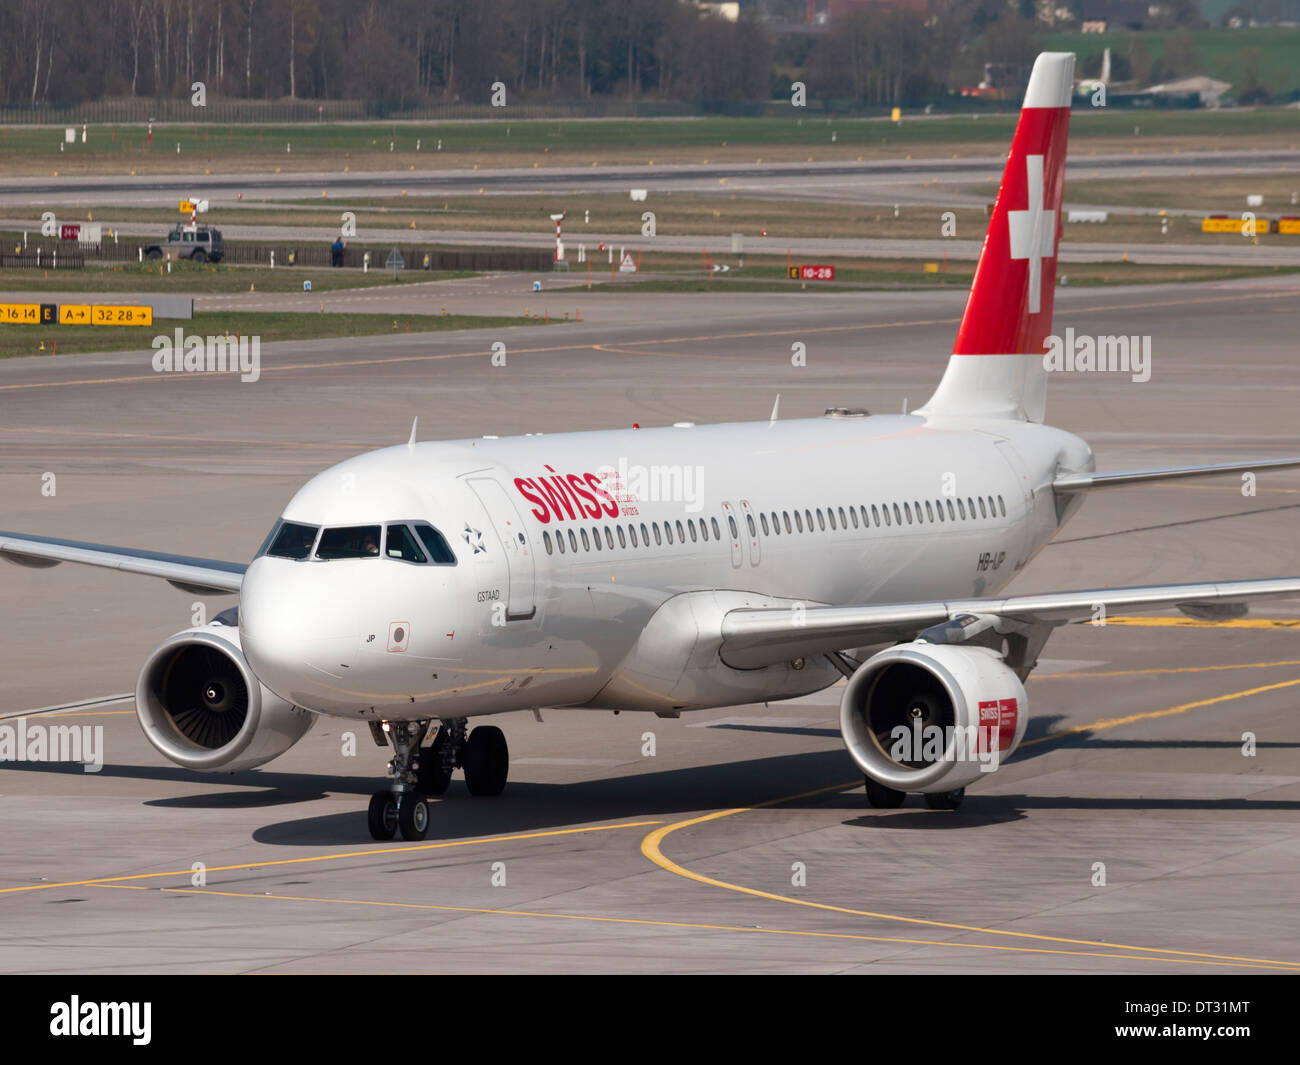 Un avión de pasajeros de Airbus de Swiss International Airlines se está acercando a la puerta en el aeropuerto internacional de Zurich Kloten. Foto de stock